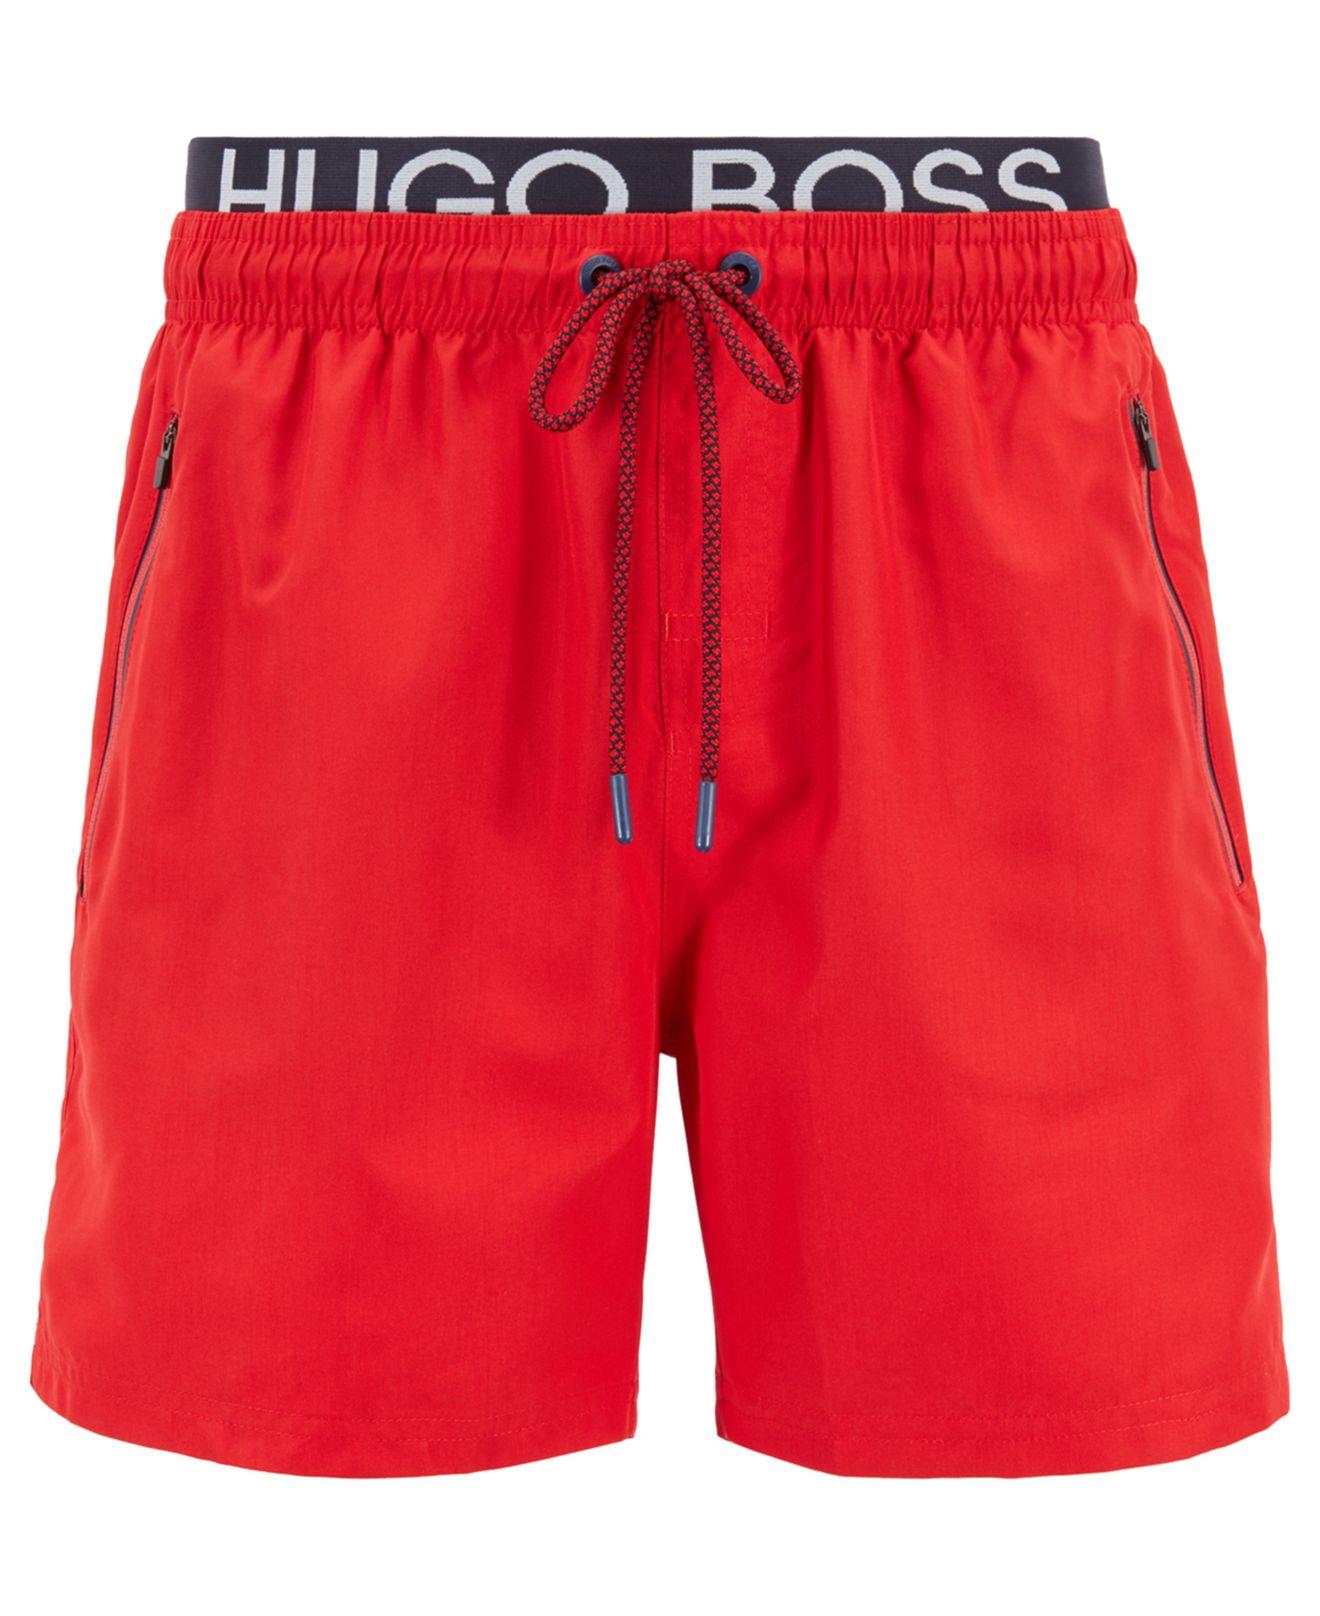 Boss Thornfish Swim Shorts Red 